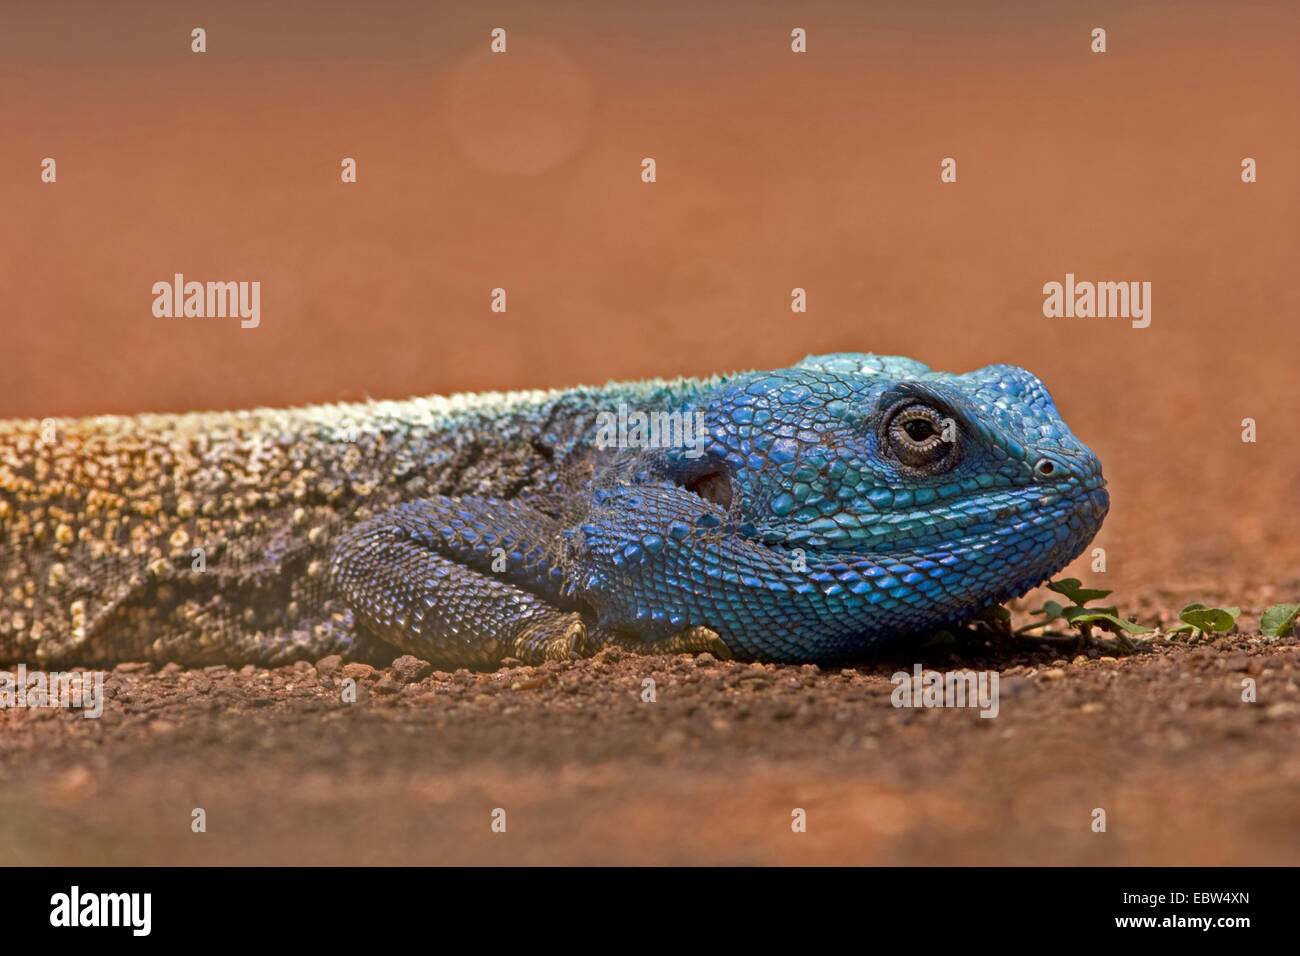 Blue-throated ruisseaux (Geum rivale, Stellio monogyna, Acanthocercus rivale), homme, portrait, Afrique du Sud, du Limpopo, Krueger National Park Banque D'Images